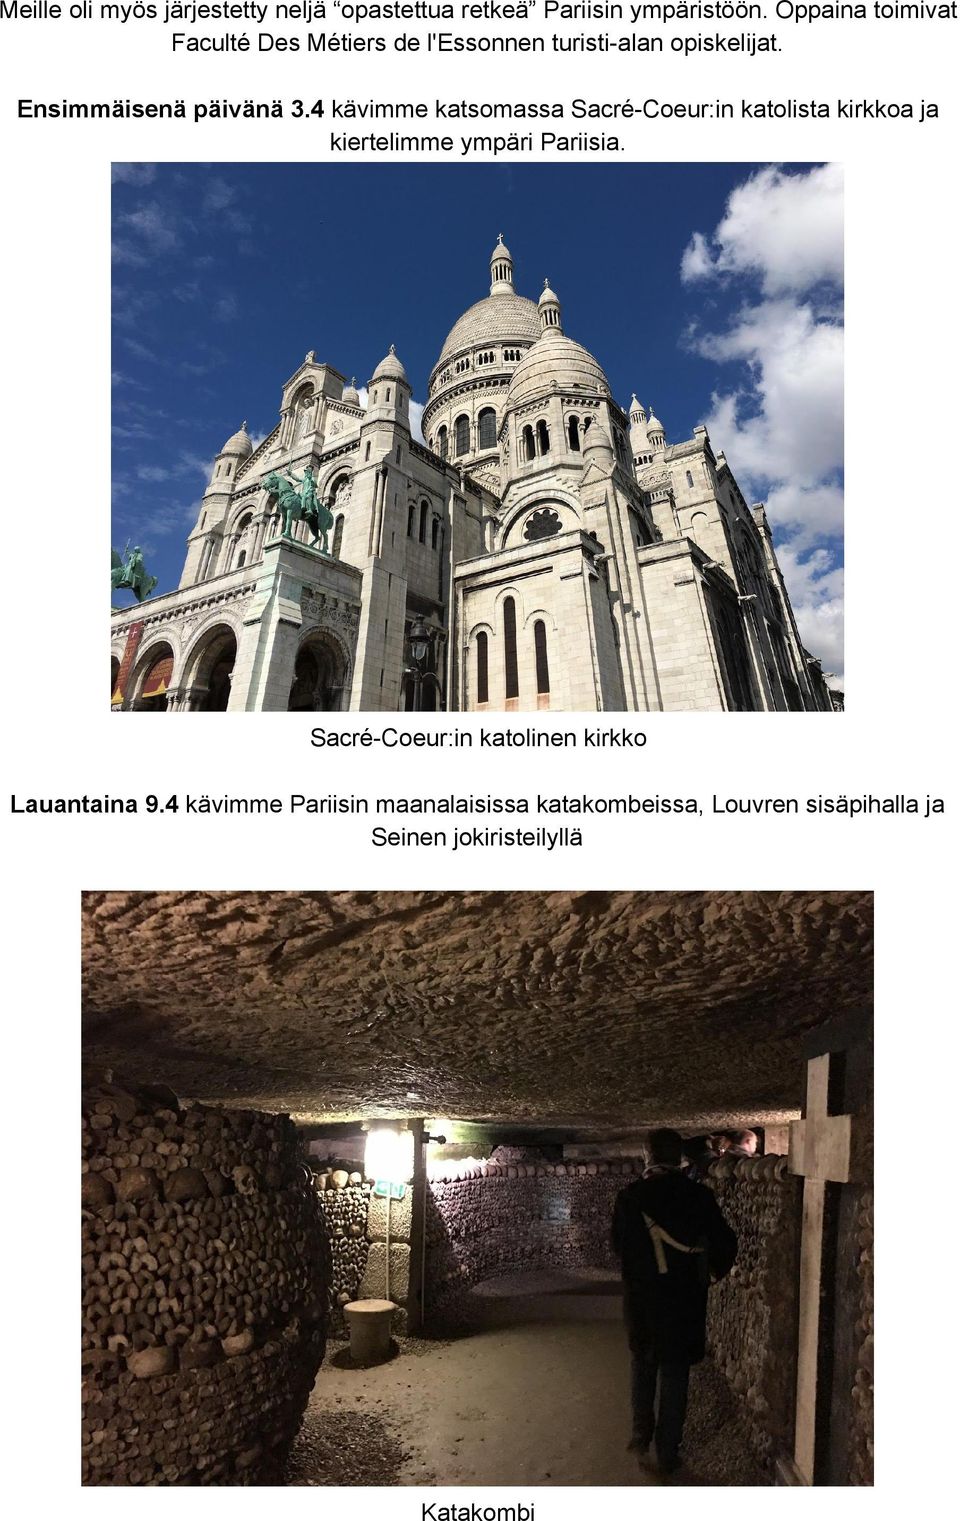 4 kävimme katsomassa Sacré Coeur:in katolista kirkkoa ja kiertelimme ympäri Pariisia.